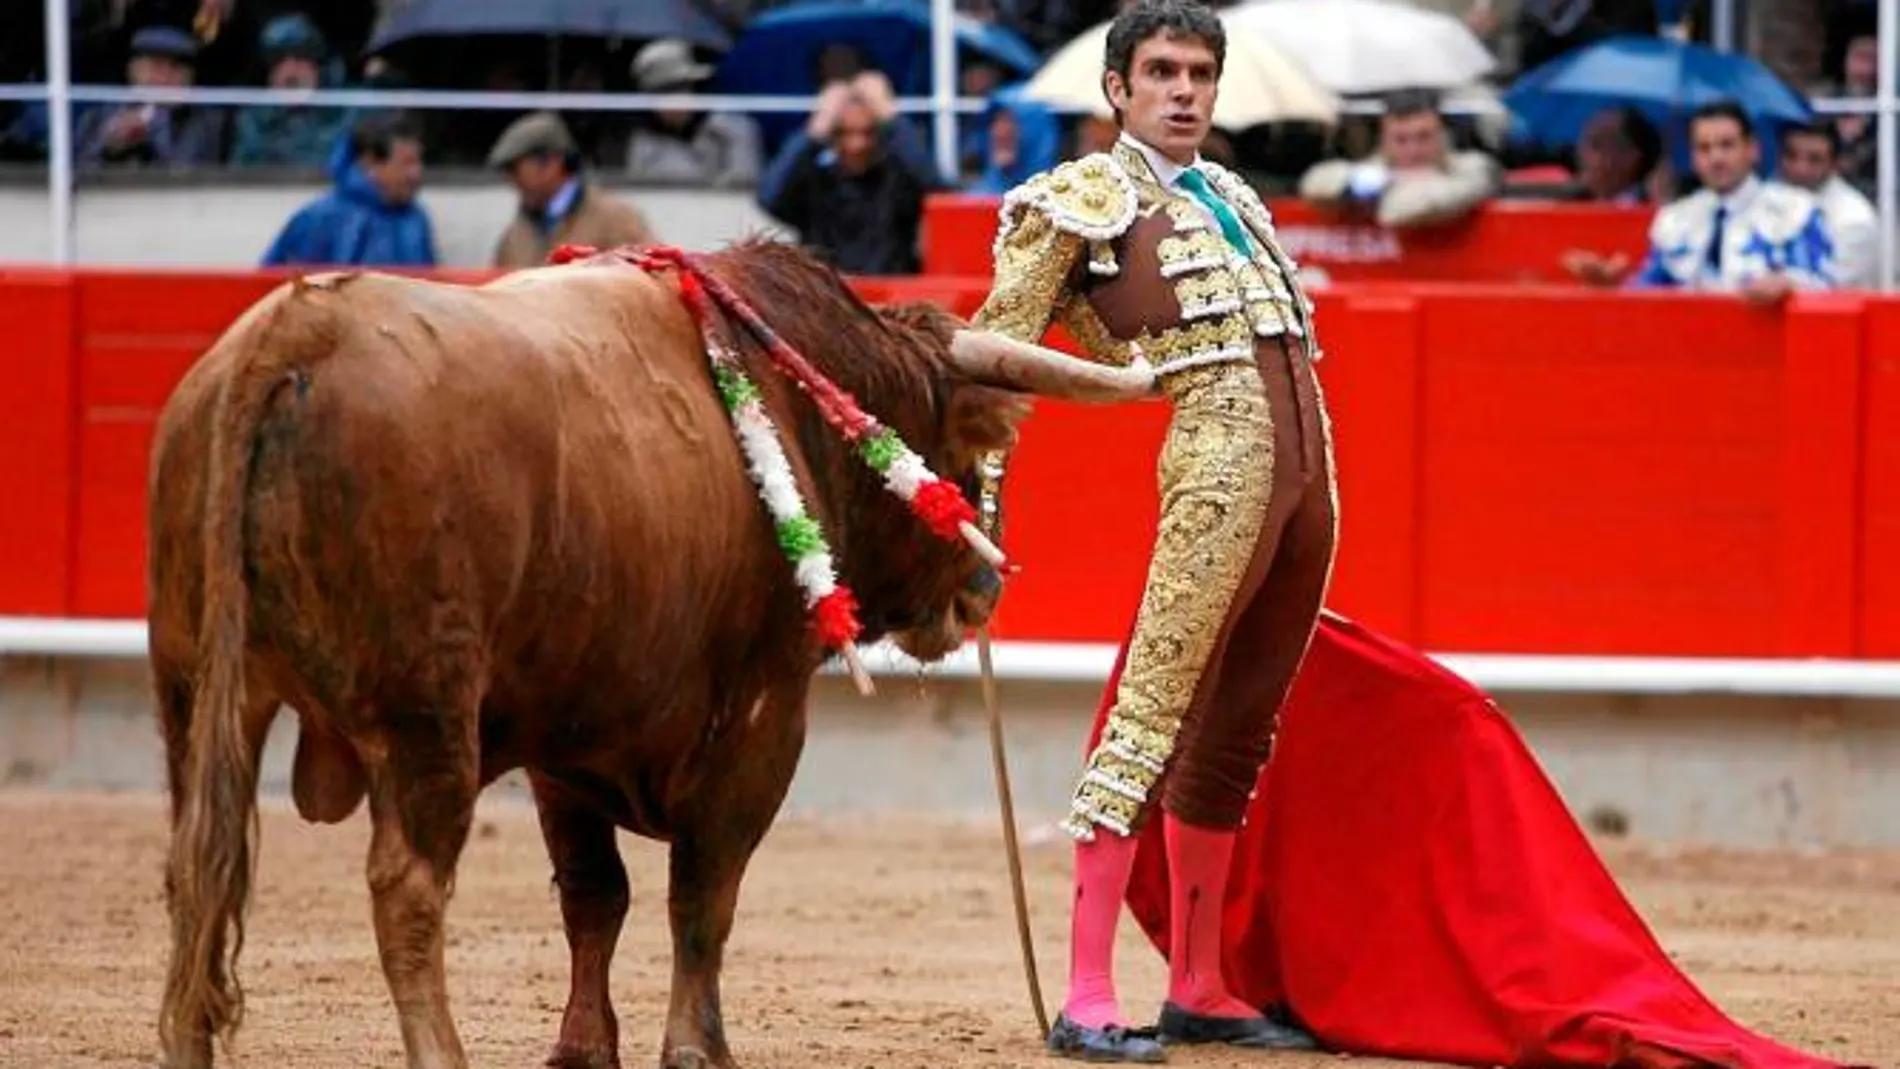 Imagen de la última corrida de toros celebrada en la Monumental de Barcelona el pasado 25 de septiembre que contó con el protagonismo del diestro José Tomás